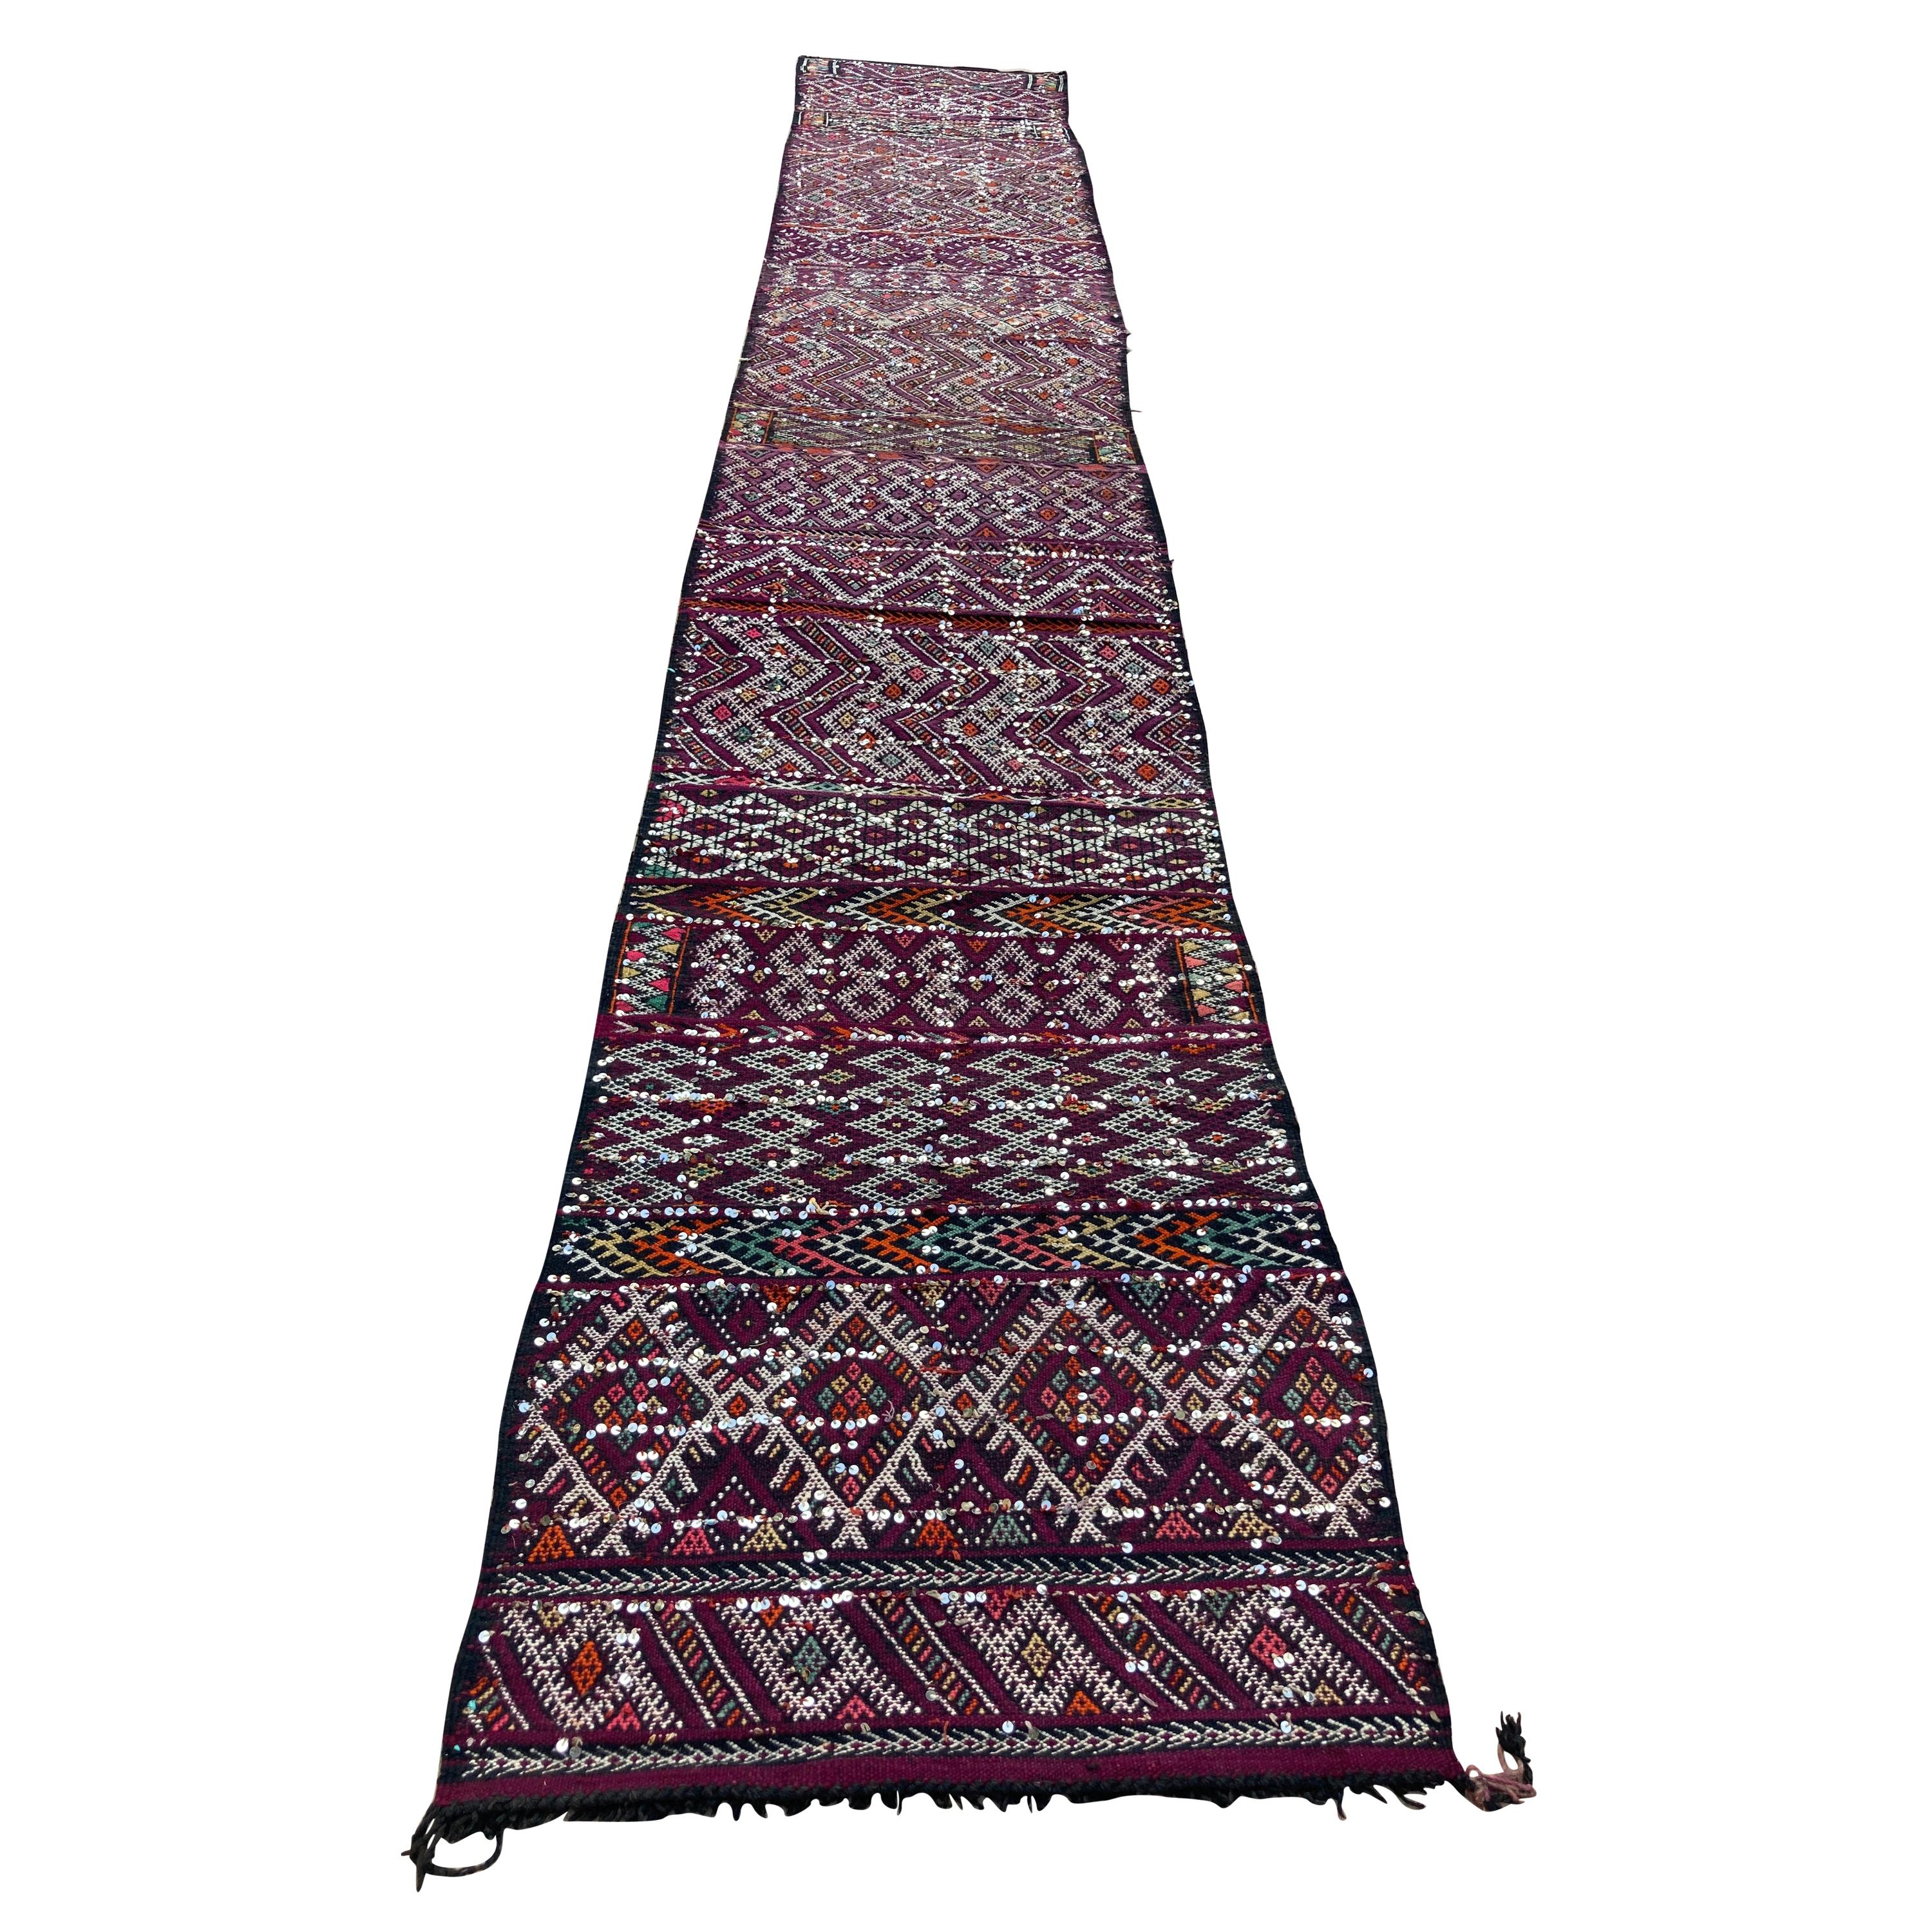 Tapis tribal marocain des années 1940 - Revêtement de sol en textile ethnique africain